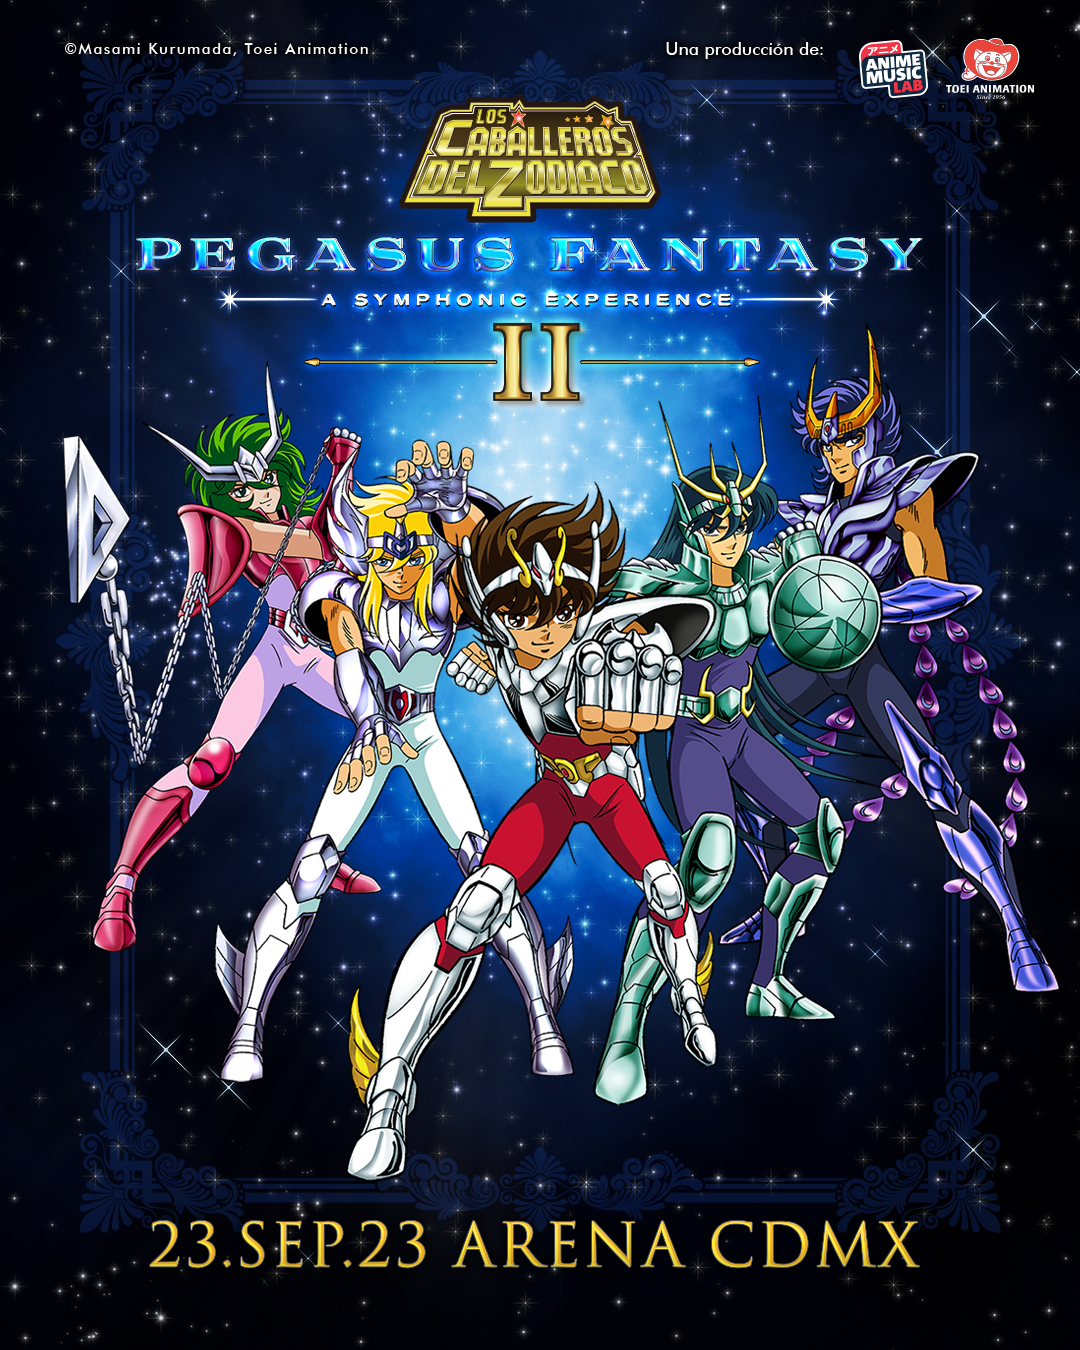 Saint Seiya, Los Caballeros del Zodiaco, Caballeros del Zodiaco, Seiji Yokoyama, Pegasus Fantasy, CDMX,